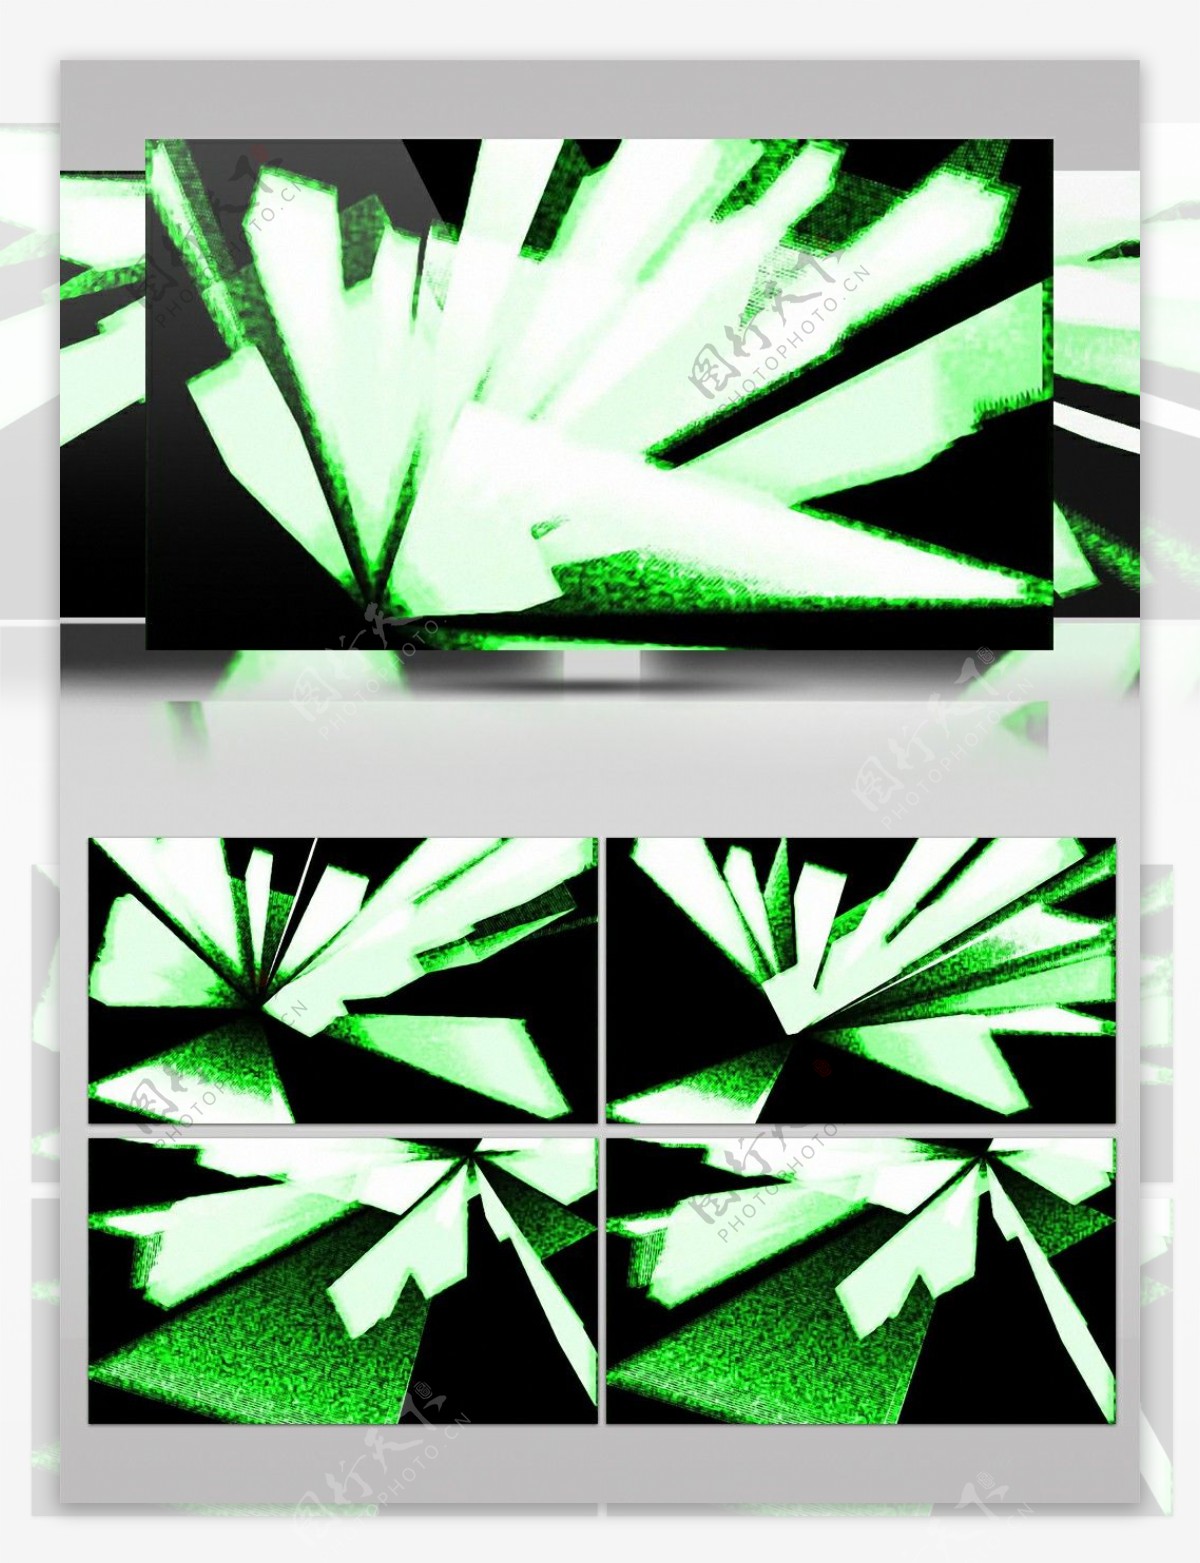 酷炫几何冰晶绿色简约视频素材